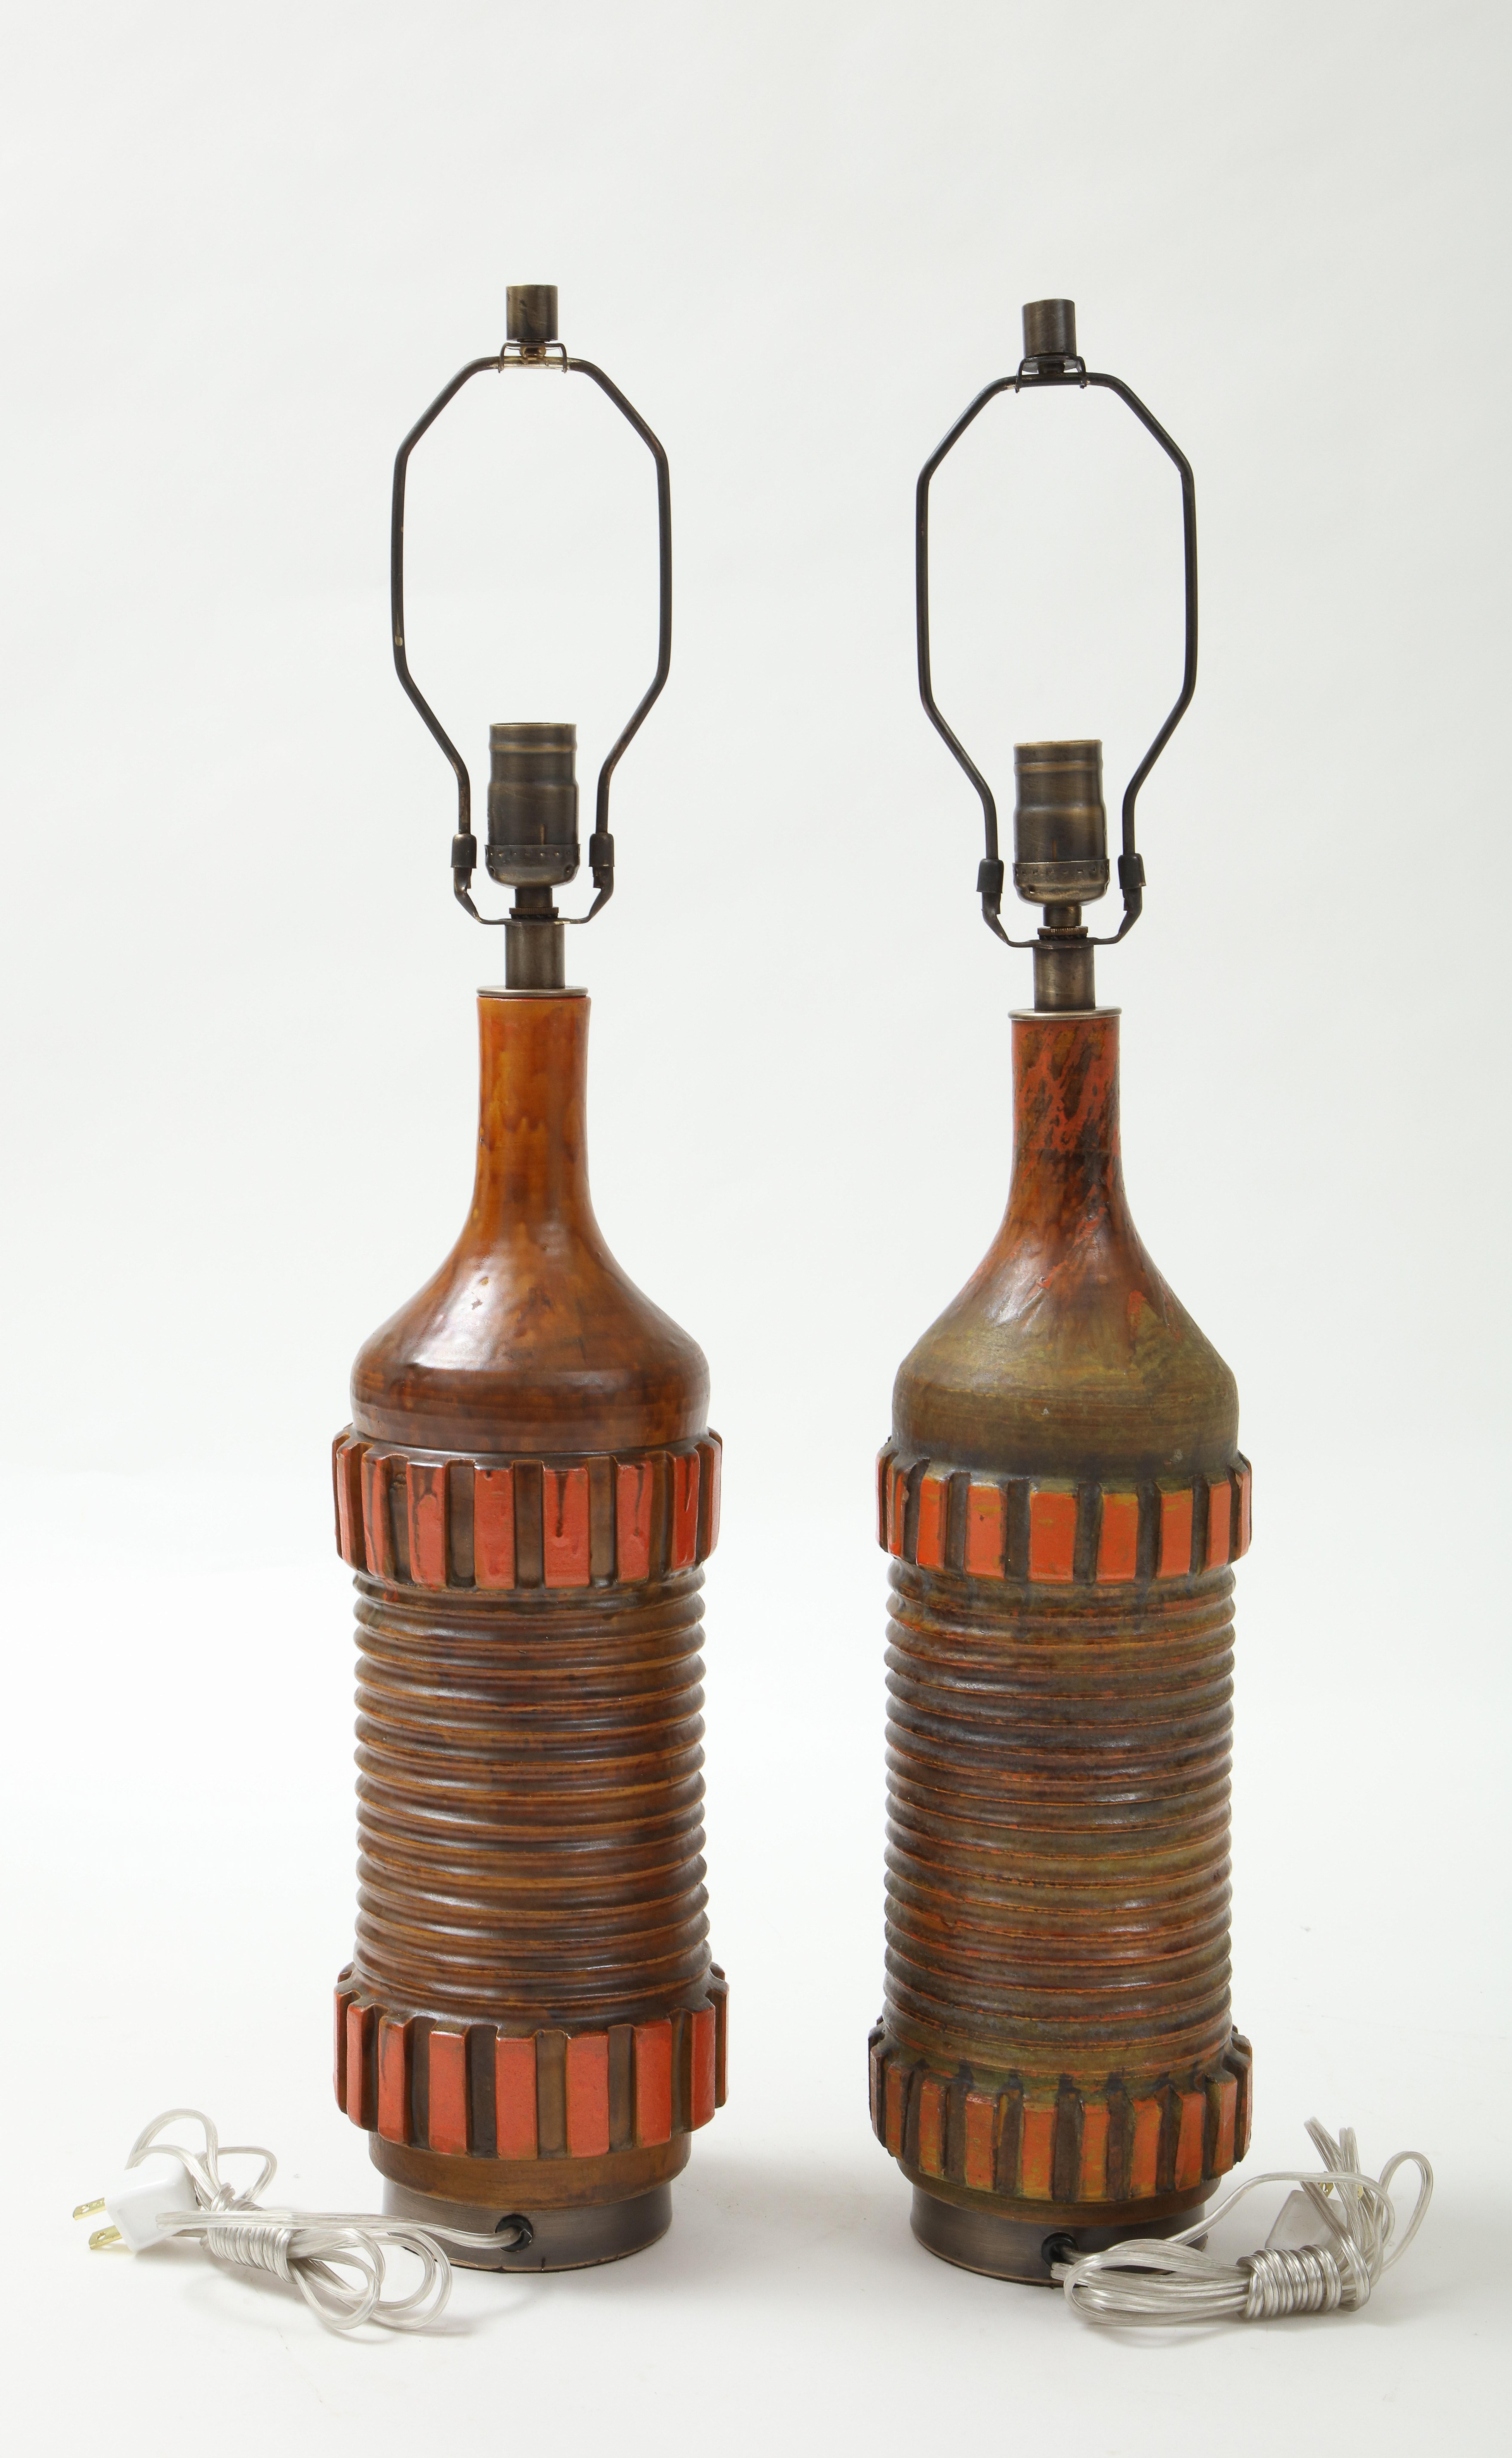 Exquise paire de lampes modernistes italiennes en céramique à la glaçure mate marron foncé/orange tachetée sur des bases en bronze faites sur mesure. Recâblé pour une utilisation aux USA. 100W max.